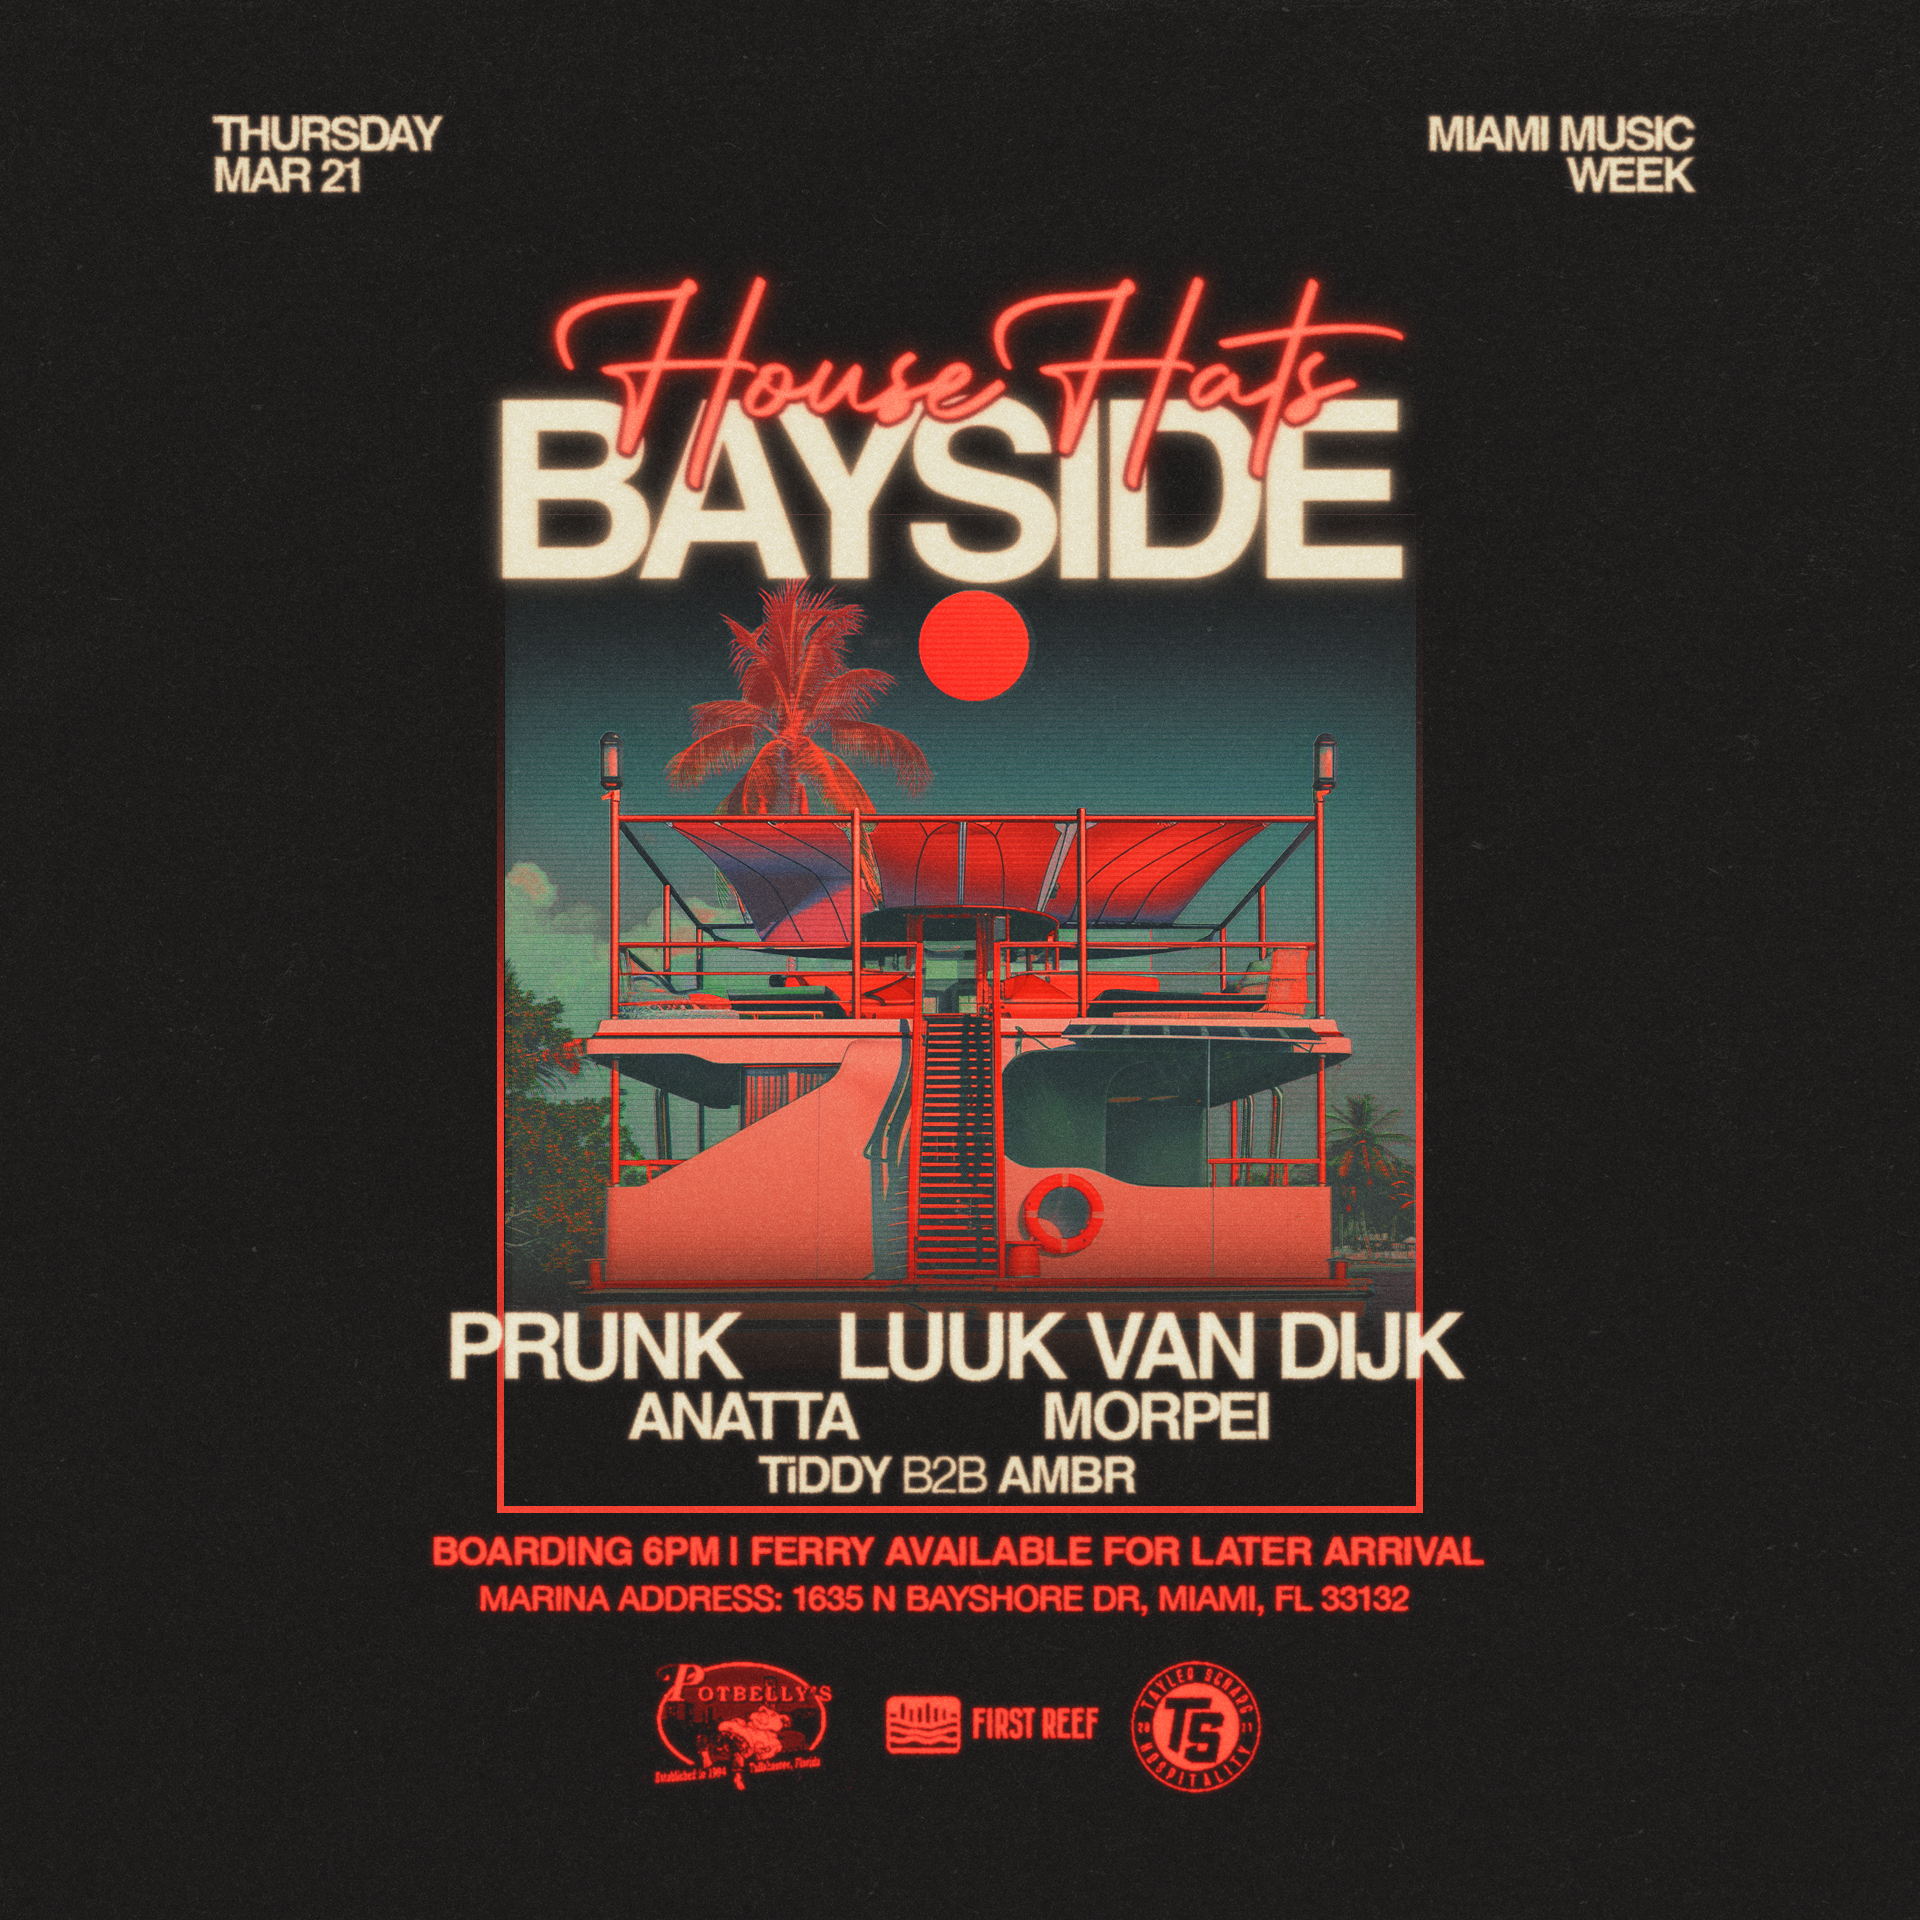 House Hats Bayside: Prunk & Luuk van Dijk - フライヤー表